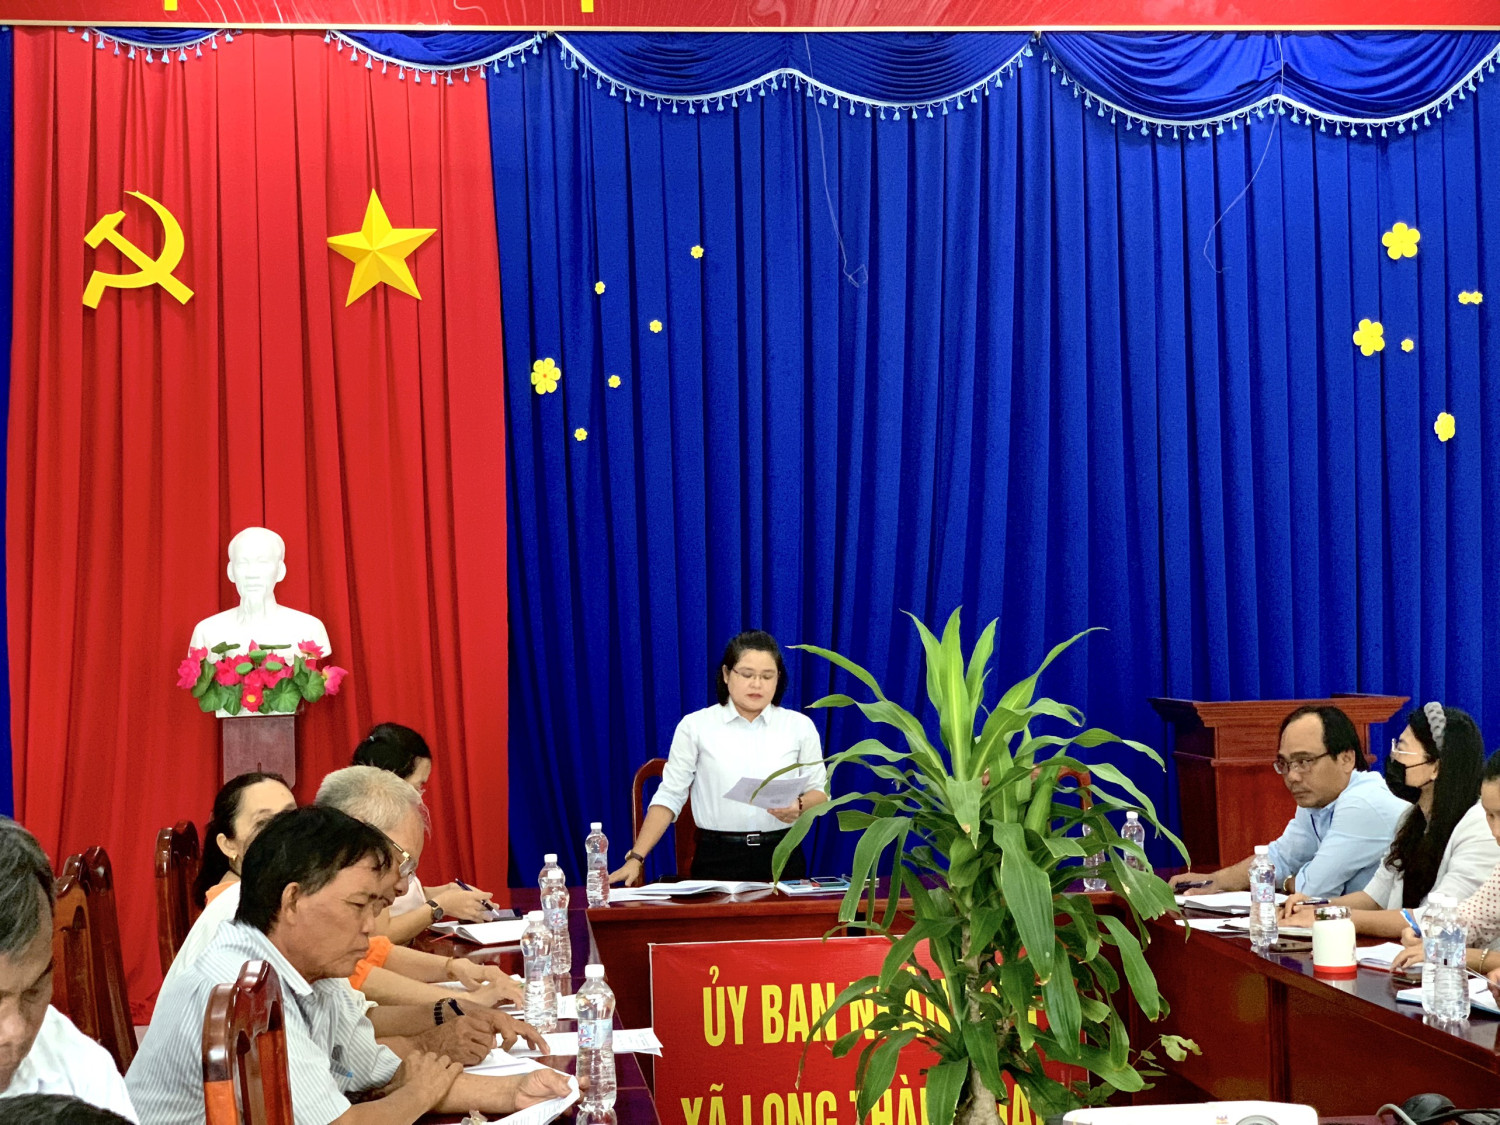 Đồng chí Lương Thị Ngọc Thanh chủ trình bắt đầu phiên giải trình